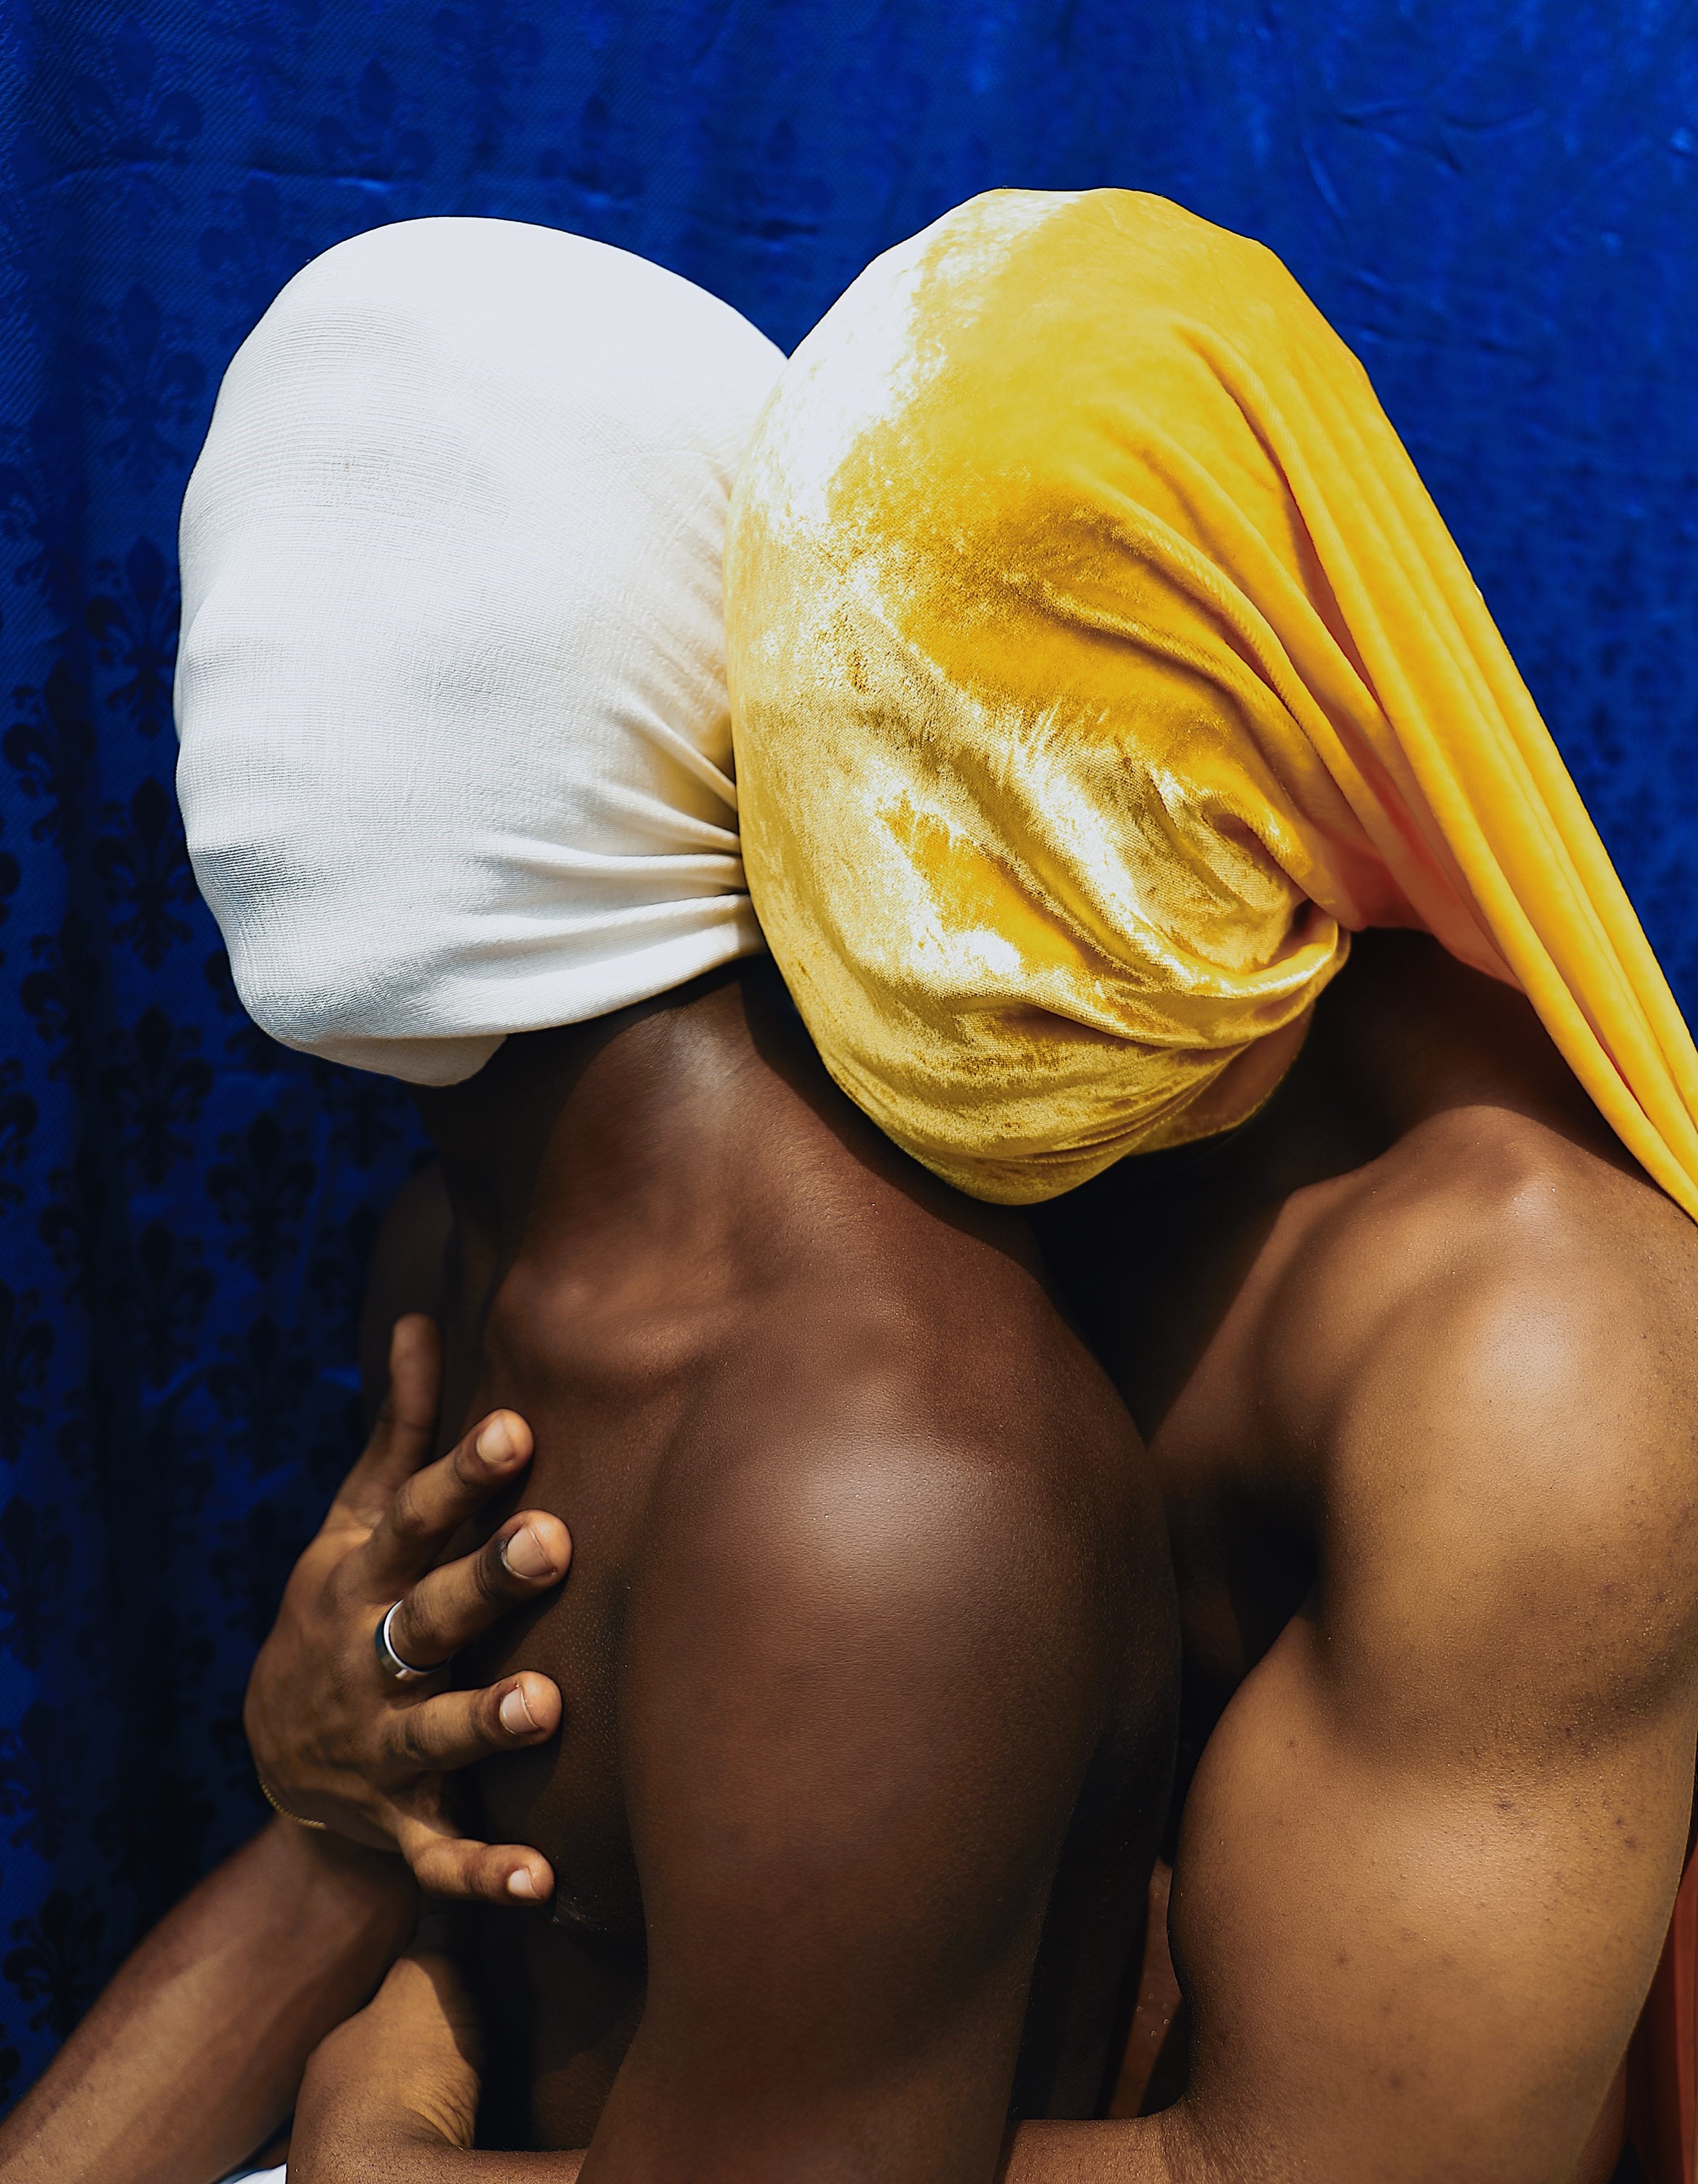 Nude Nizirian Blue Film Xxx - What it's like being a gay porn star in Nigeria | Dazed